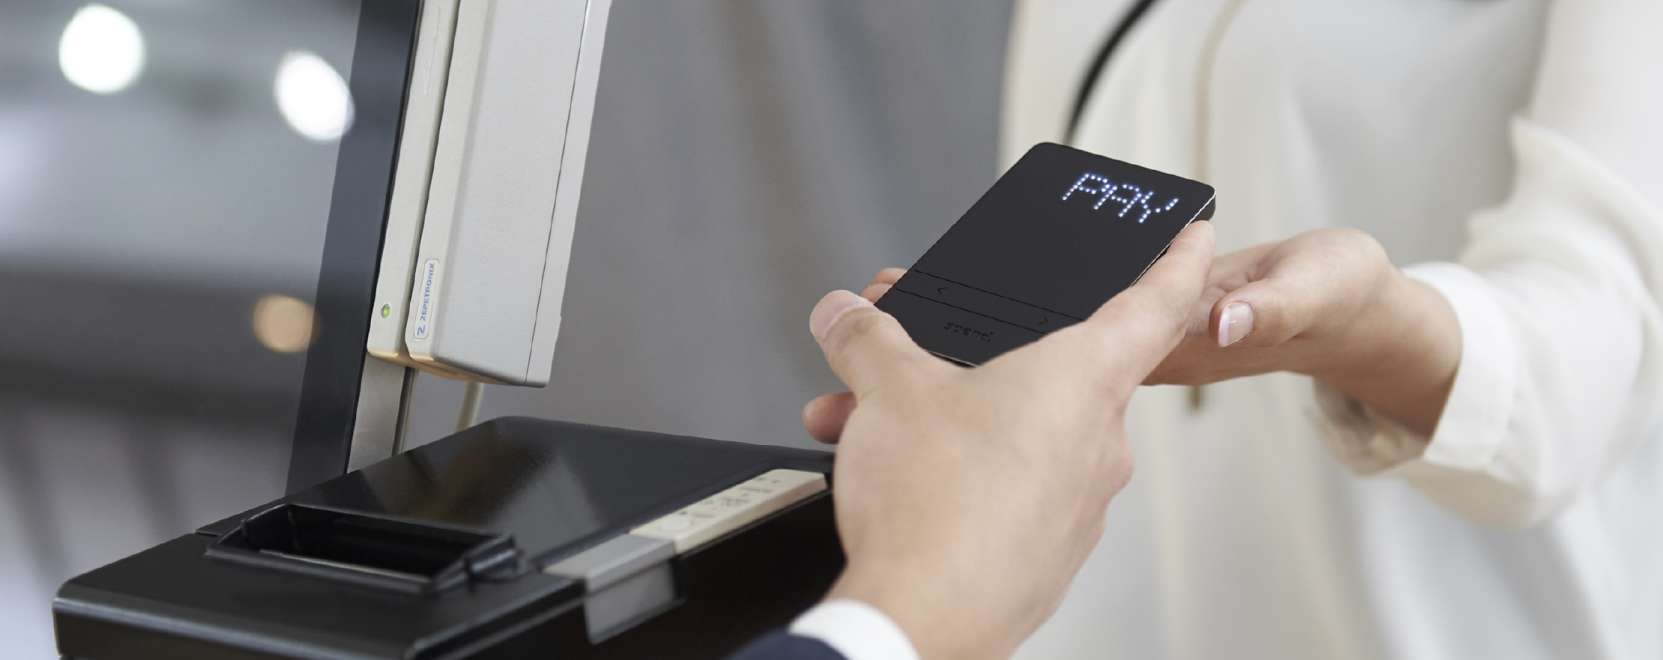 Akár 20 bankkártya adatait is eltárolja az új mobiltárca